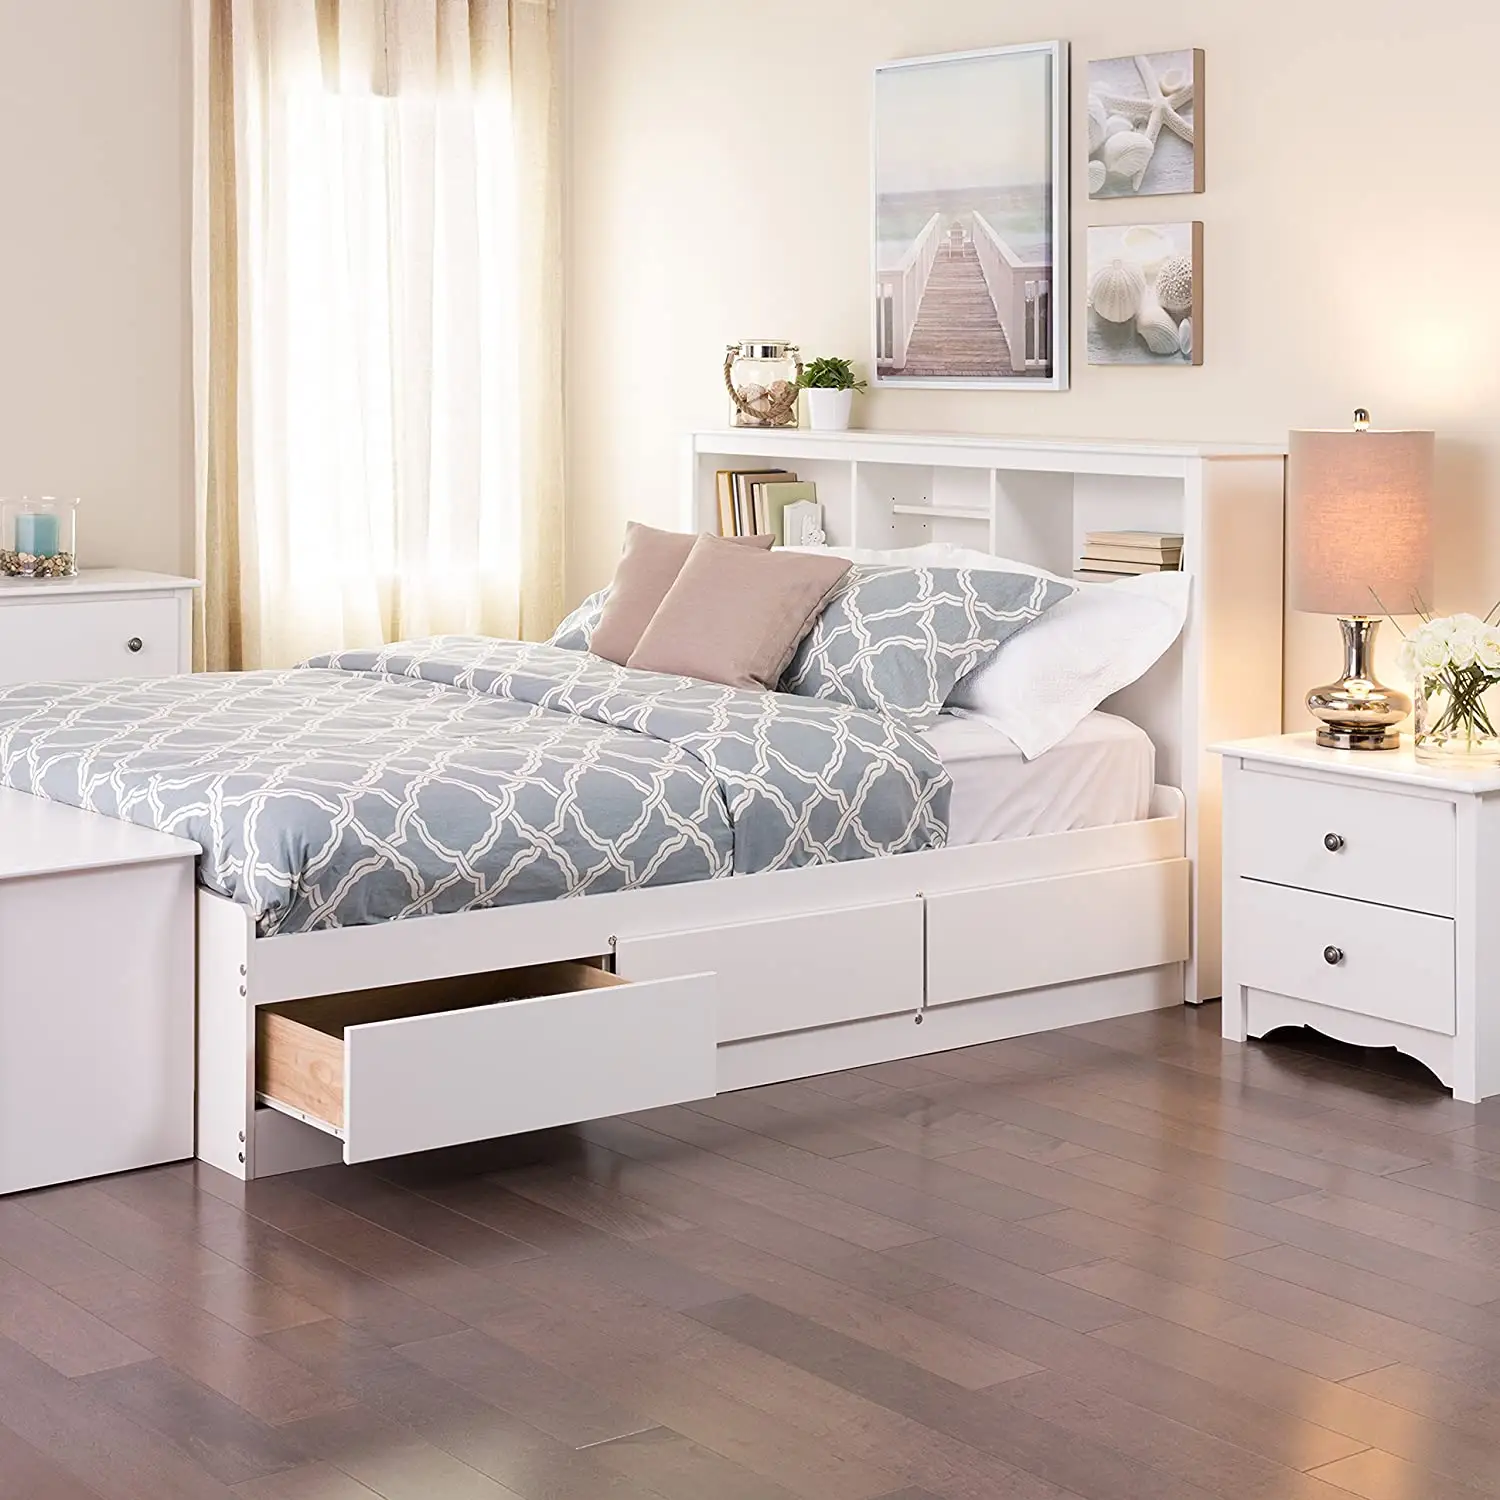 Meubles sur mesure moderne multifonctionnel lit blanc en bois de lit de stockage